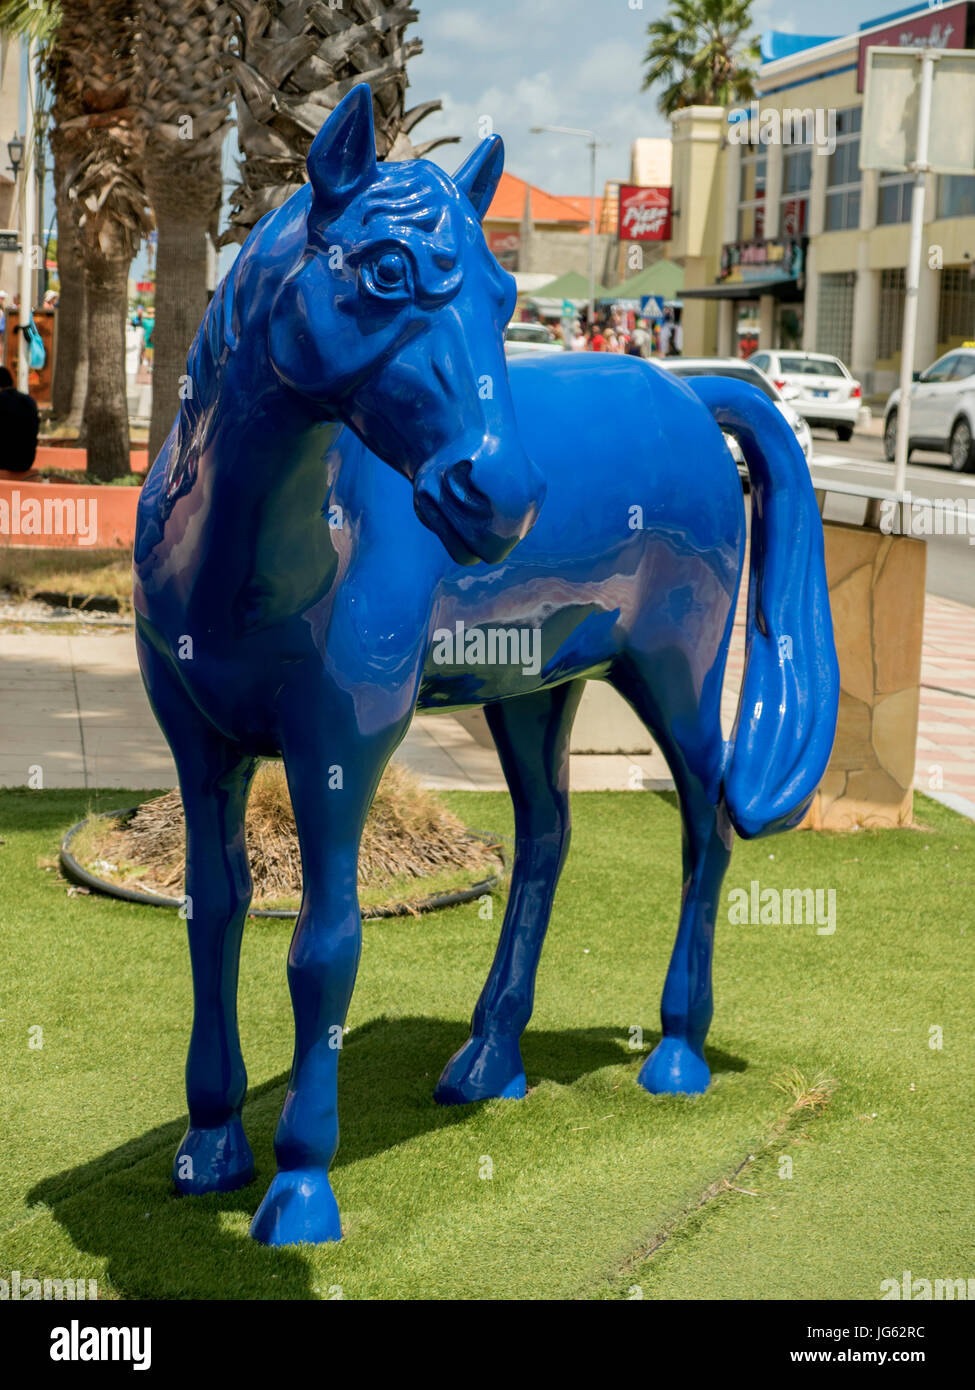 https://c8.alamy.com/compes/jg62rc/una-instalacion-de-arte-publico-de-ocho-caballos-azul-en-oranjestad-parte-del-proyecto-paarden-baai-caballo-bay-2015-representando-la-importancia-del-caballo-a-ar-jg62rc.jpg